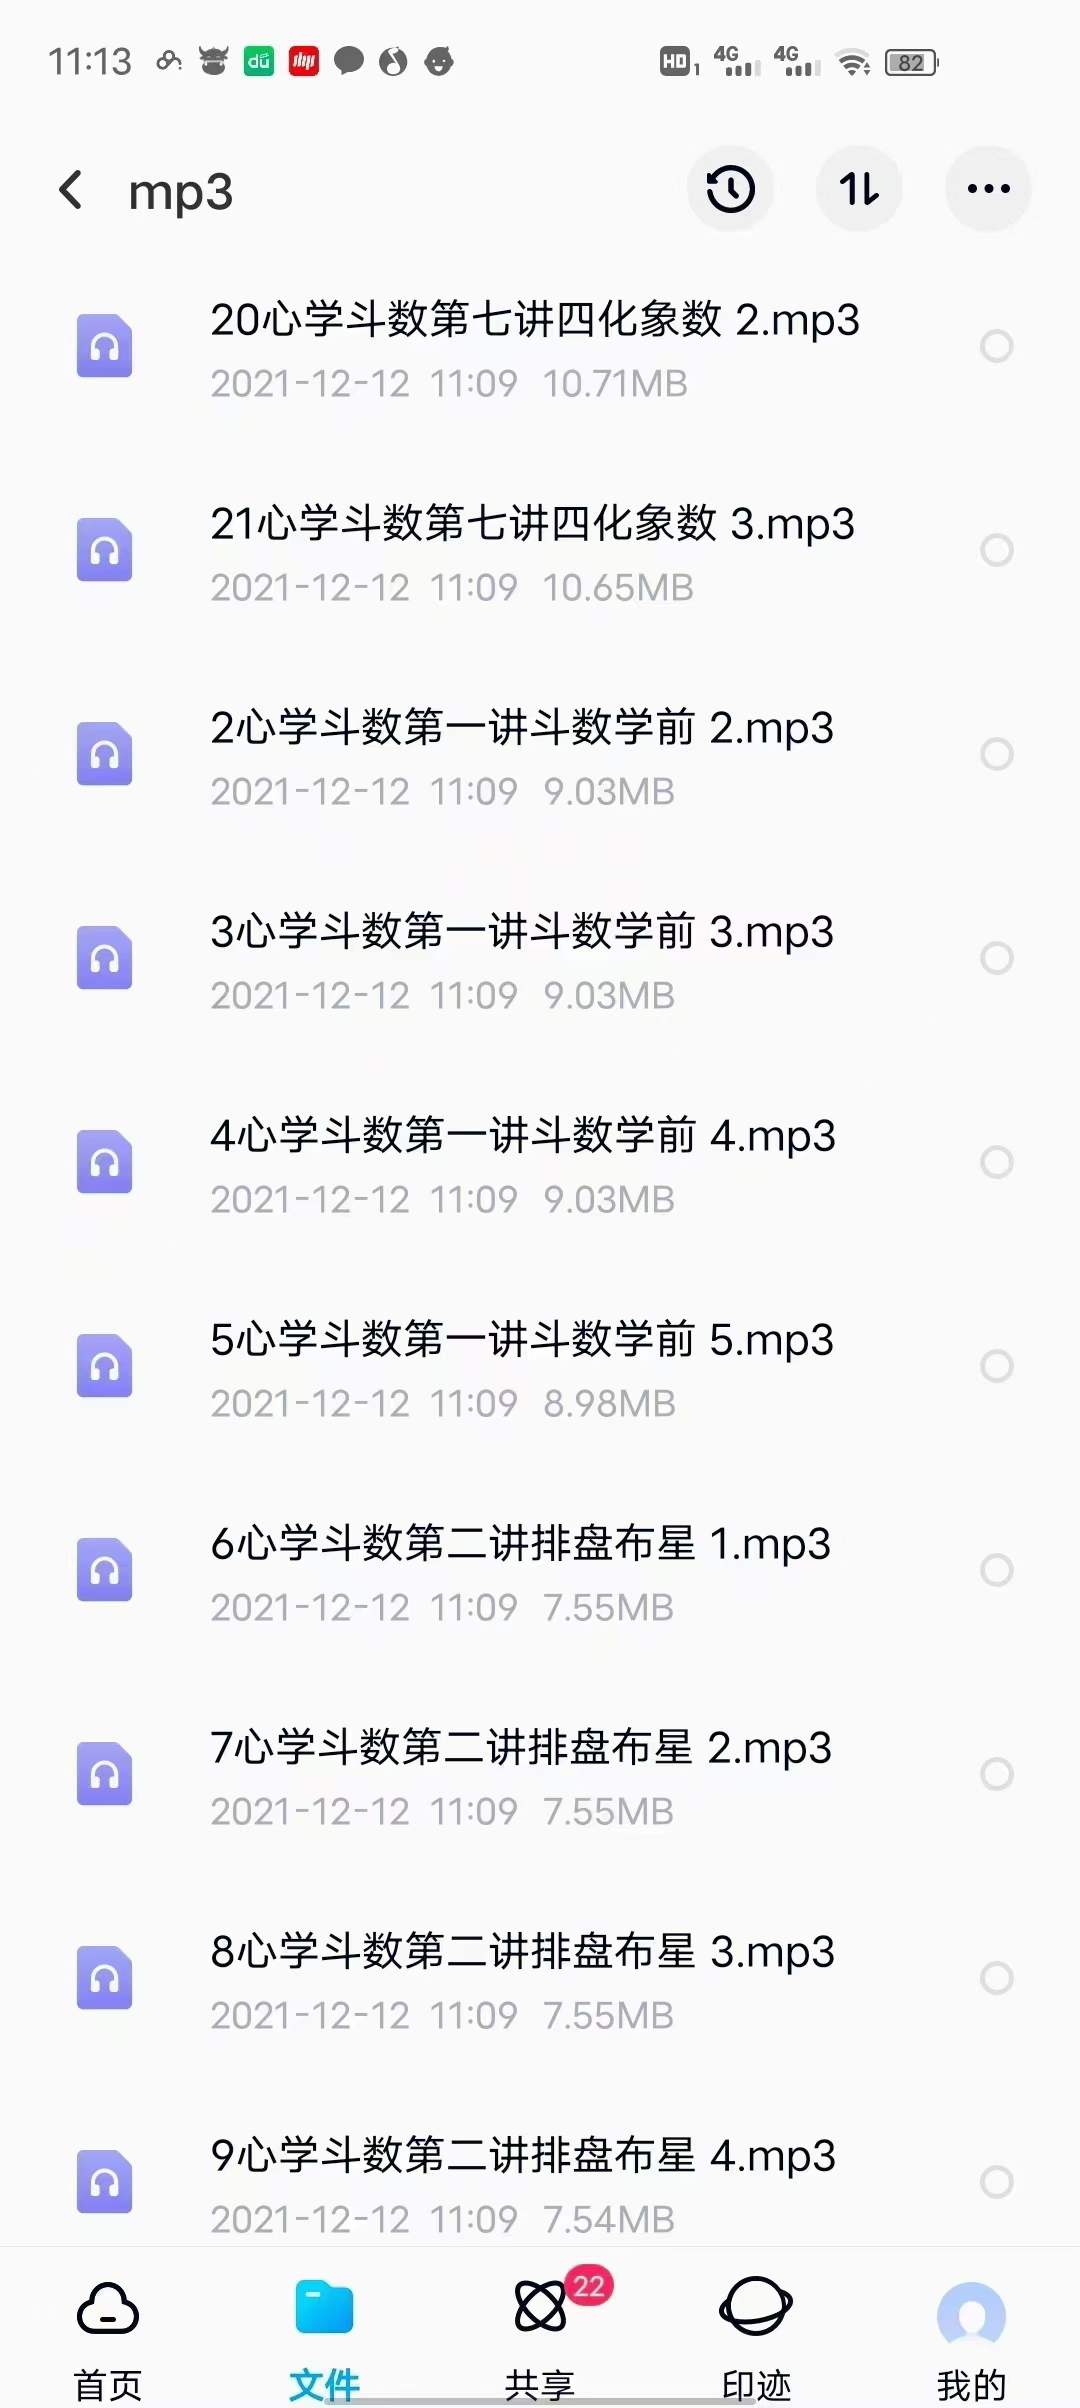 刘金府象数心学紫薇斗数 视频+录音+文档 百度网盘下载(图5)